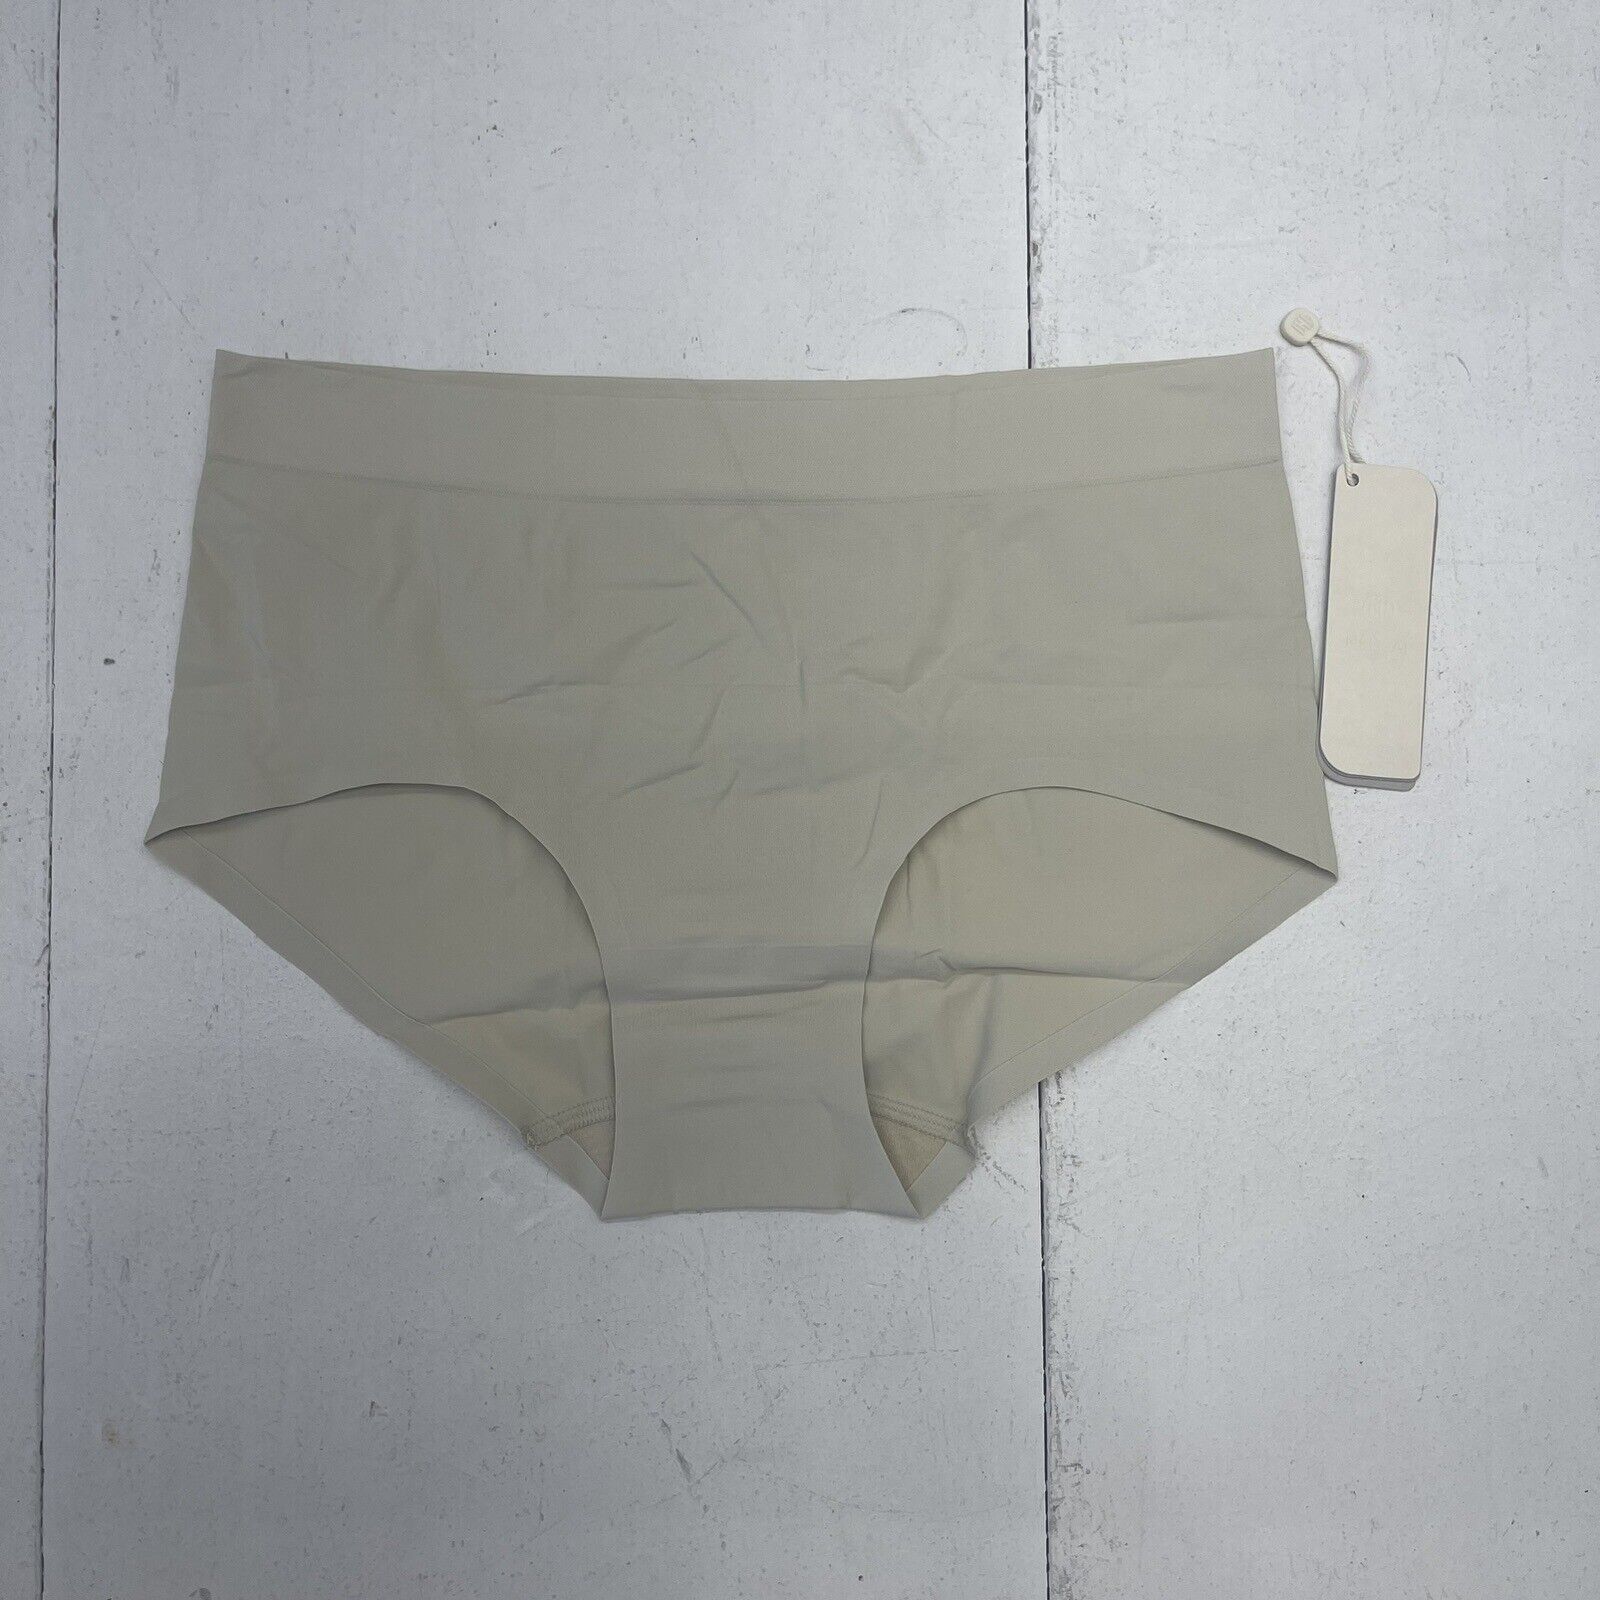 Cotton Underwear – NEIWAI